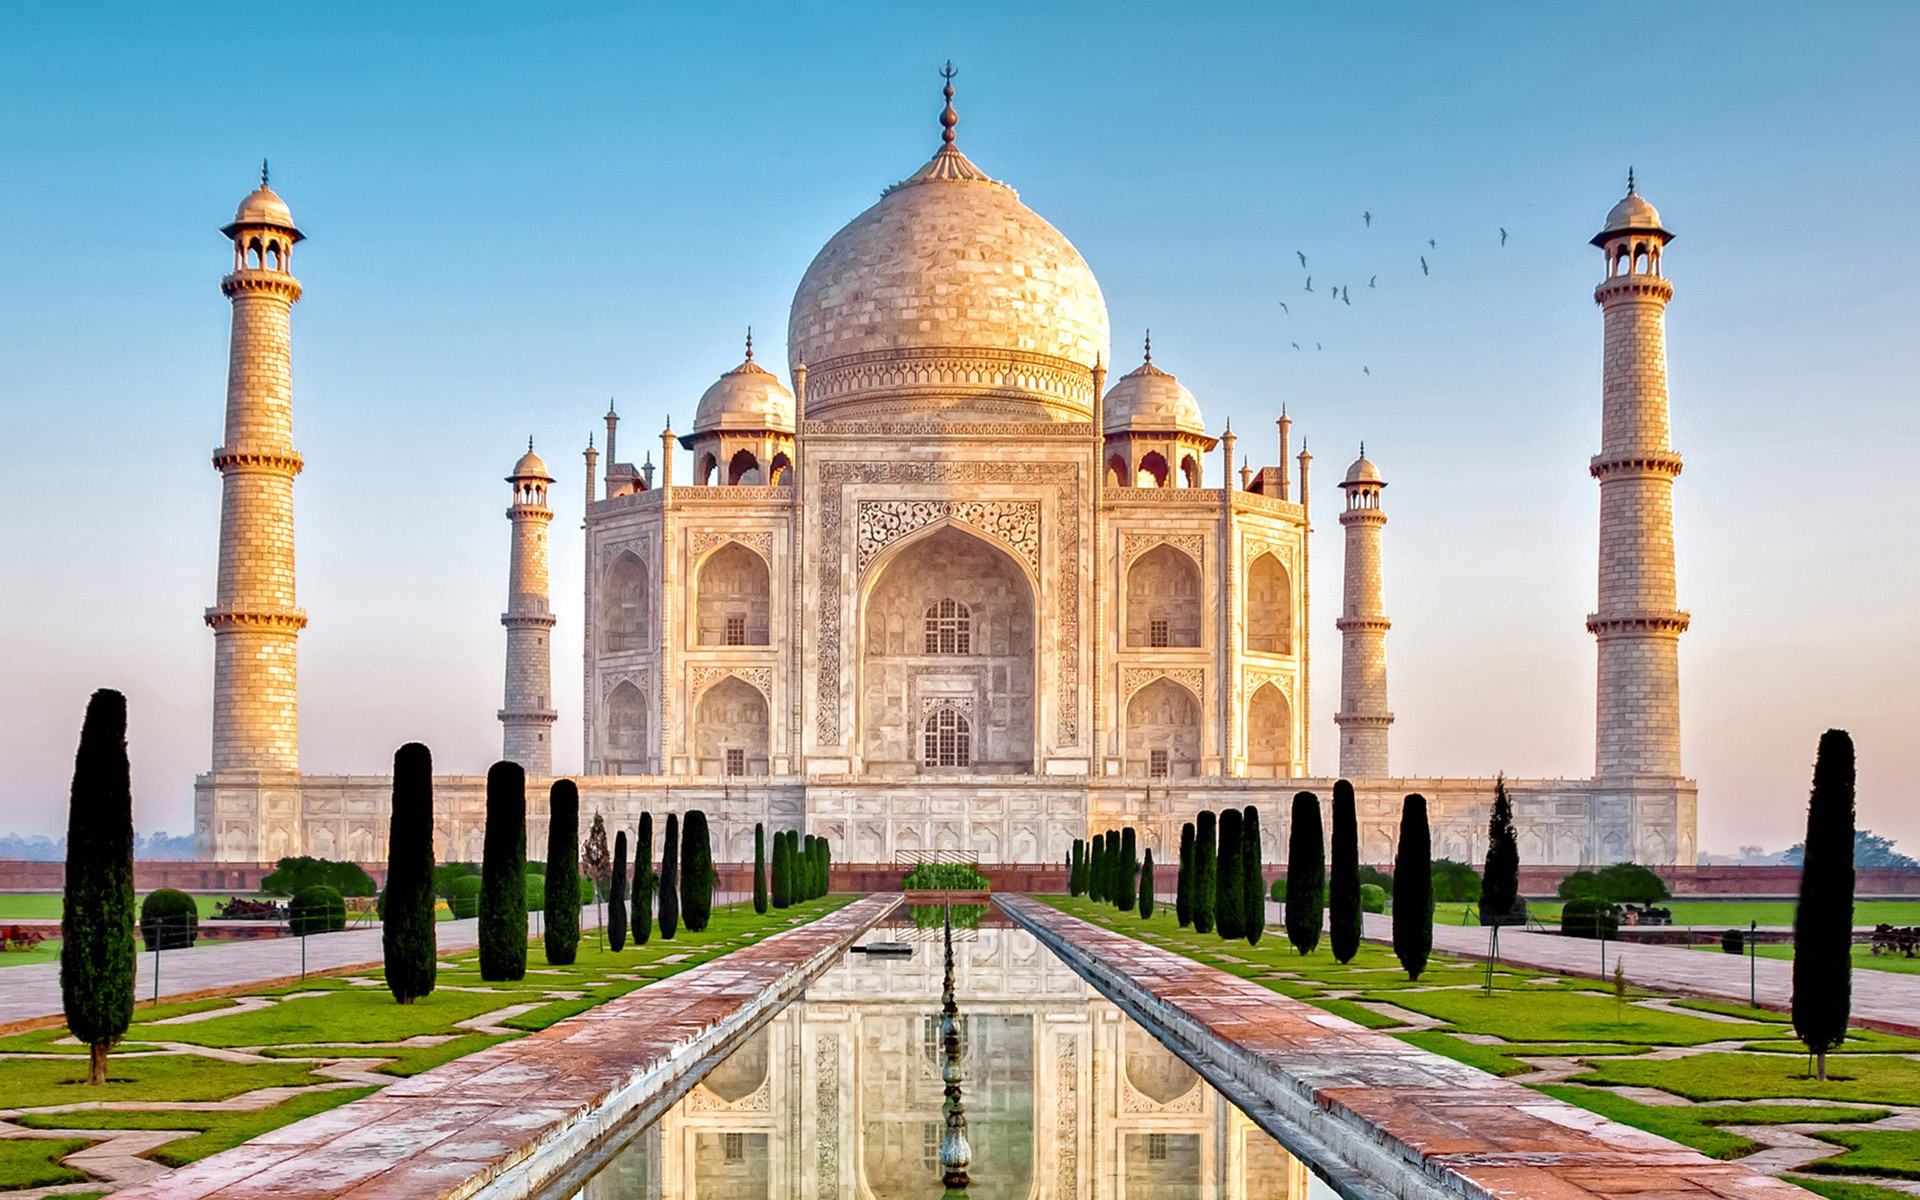 Taj Mahal Tour Get Lost In The True Love Of Shah Jahan & Mumtaz Mahal